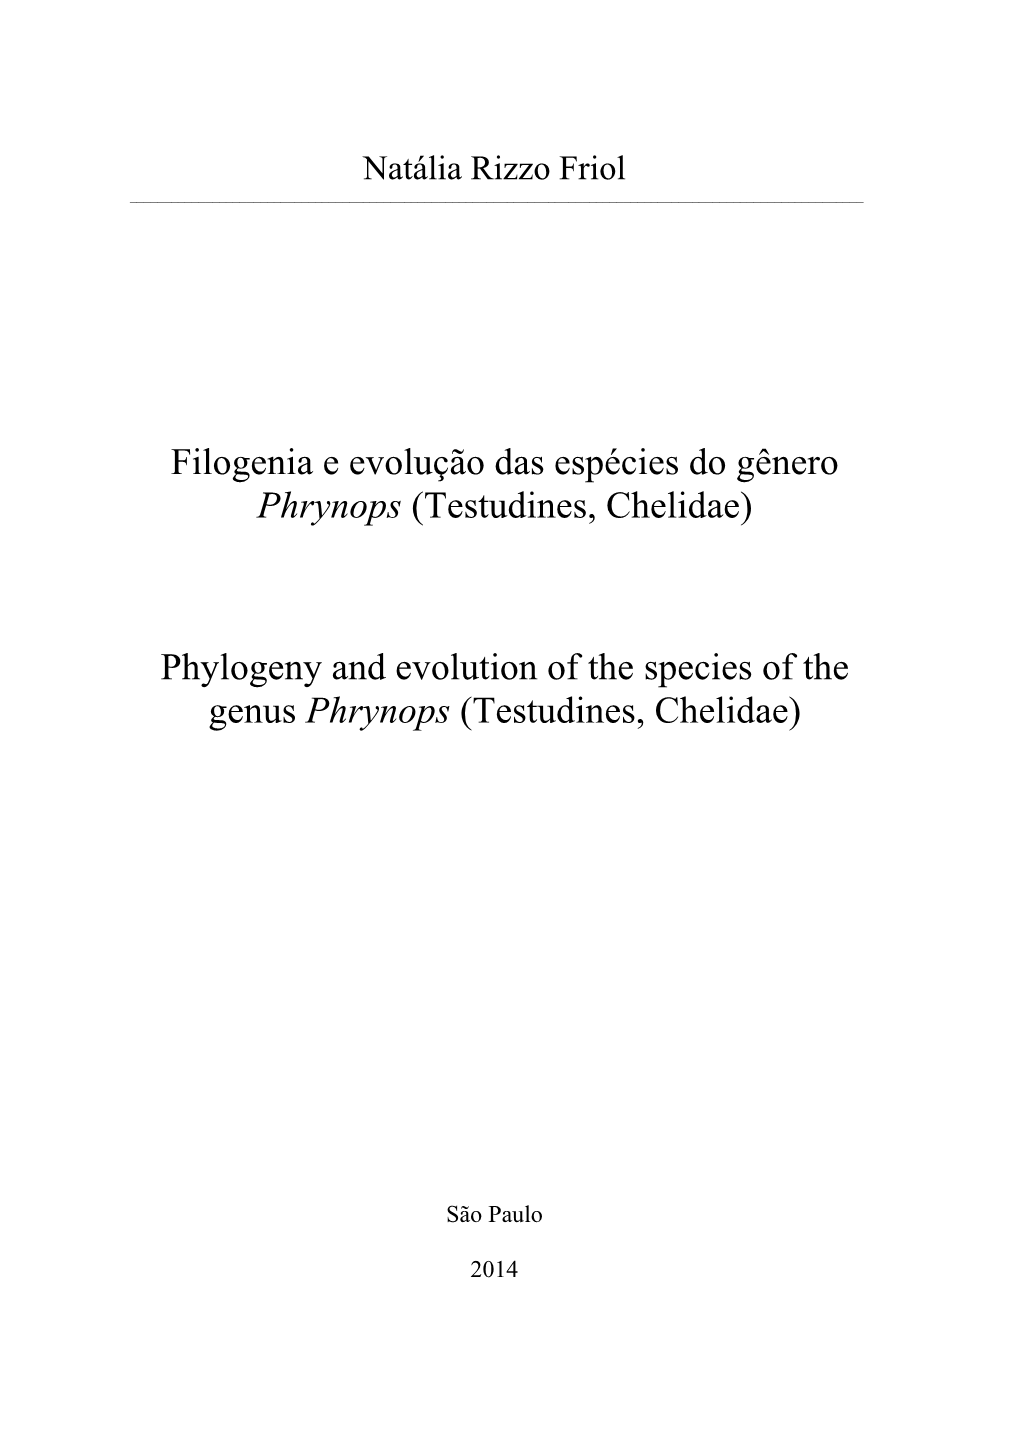 Filogenia E Evolução Das Espécies Do Gênero Phrynops (Testudines, Chelidae)